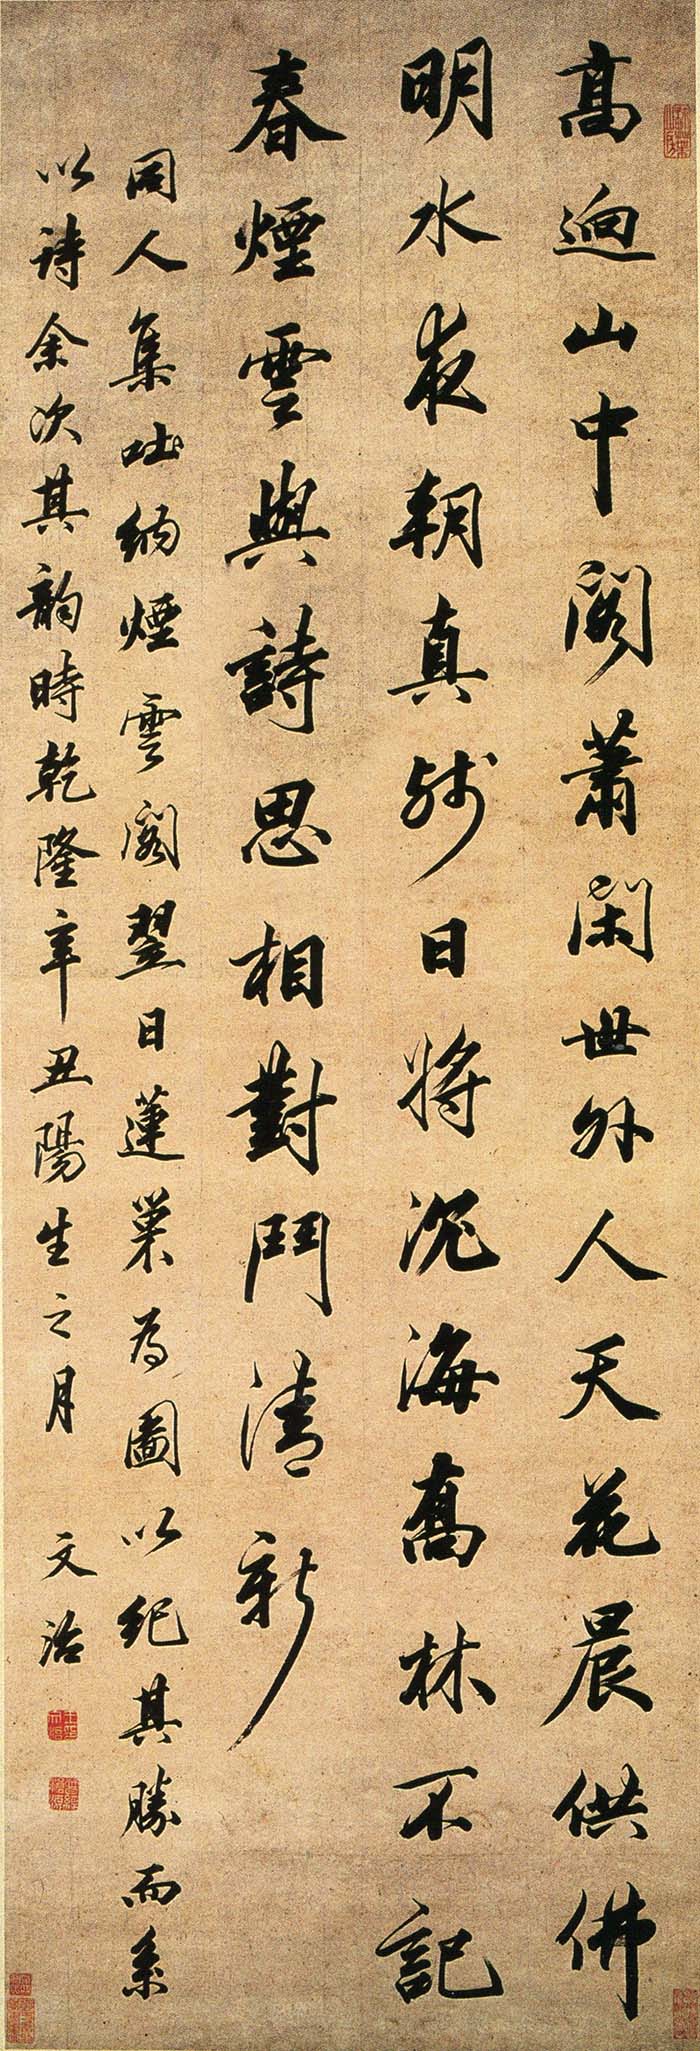 王文治《行书五律诗轴》-湖南省博物馆藏(图1)